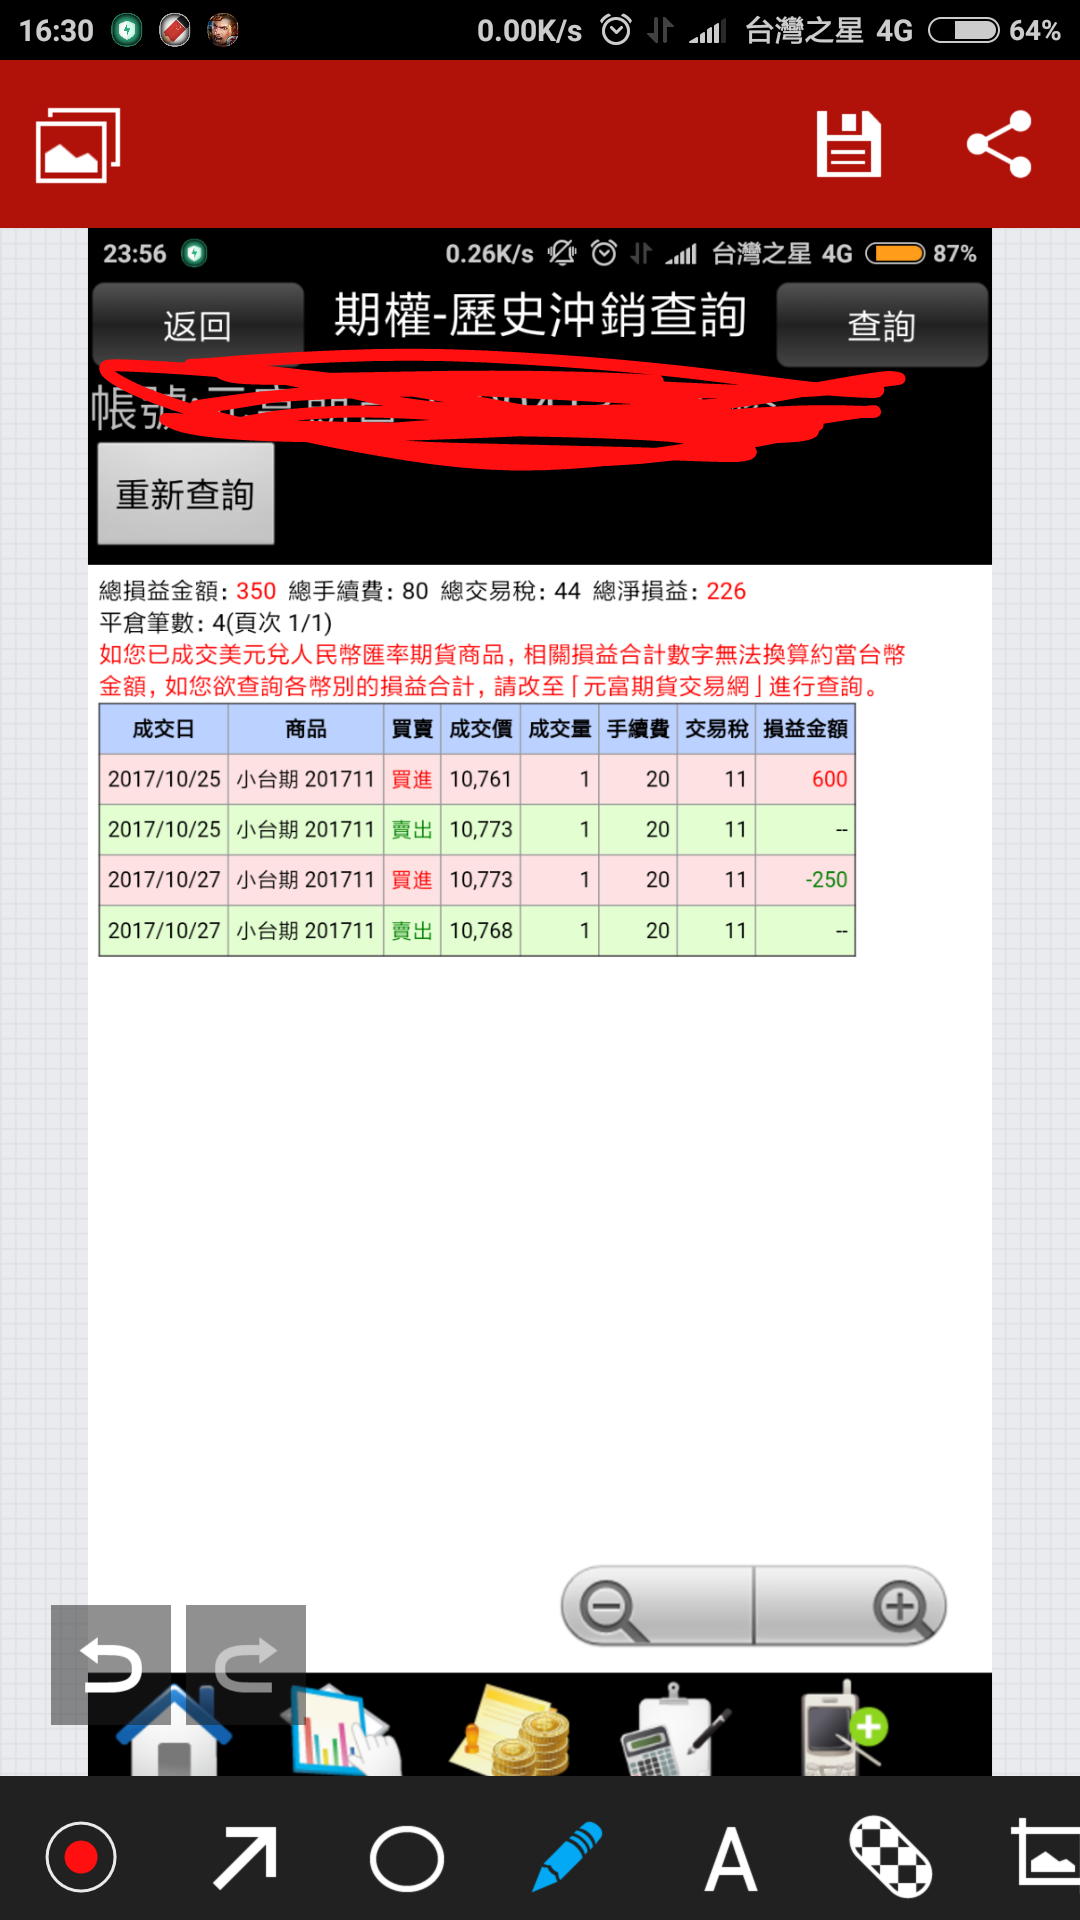 Screenshot_2017-11-26-16-30-02-414_com.tencent.qpaint.png